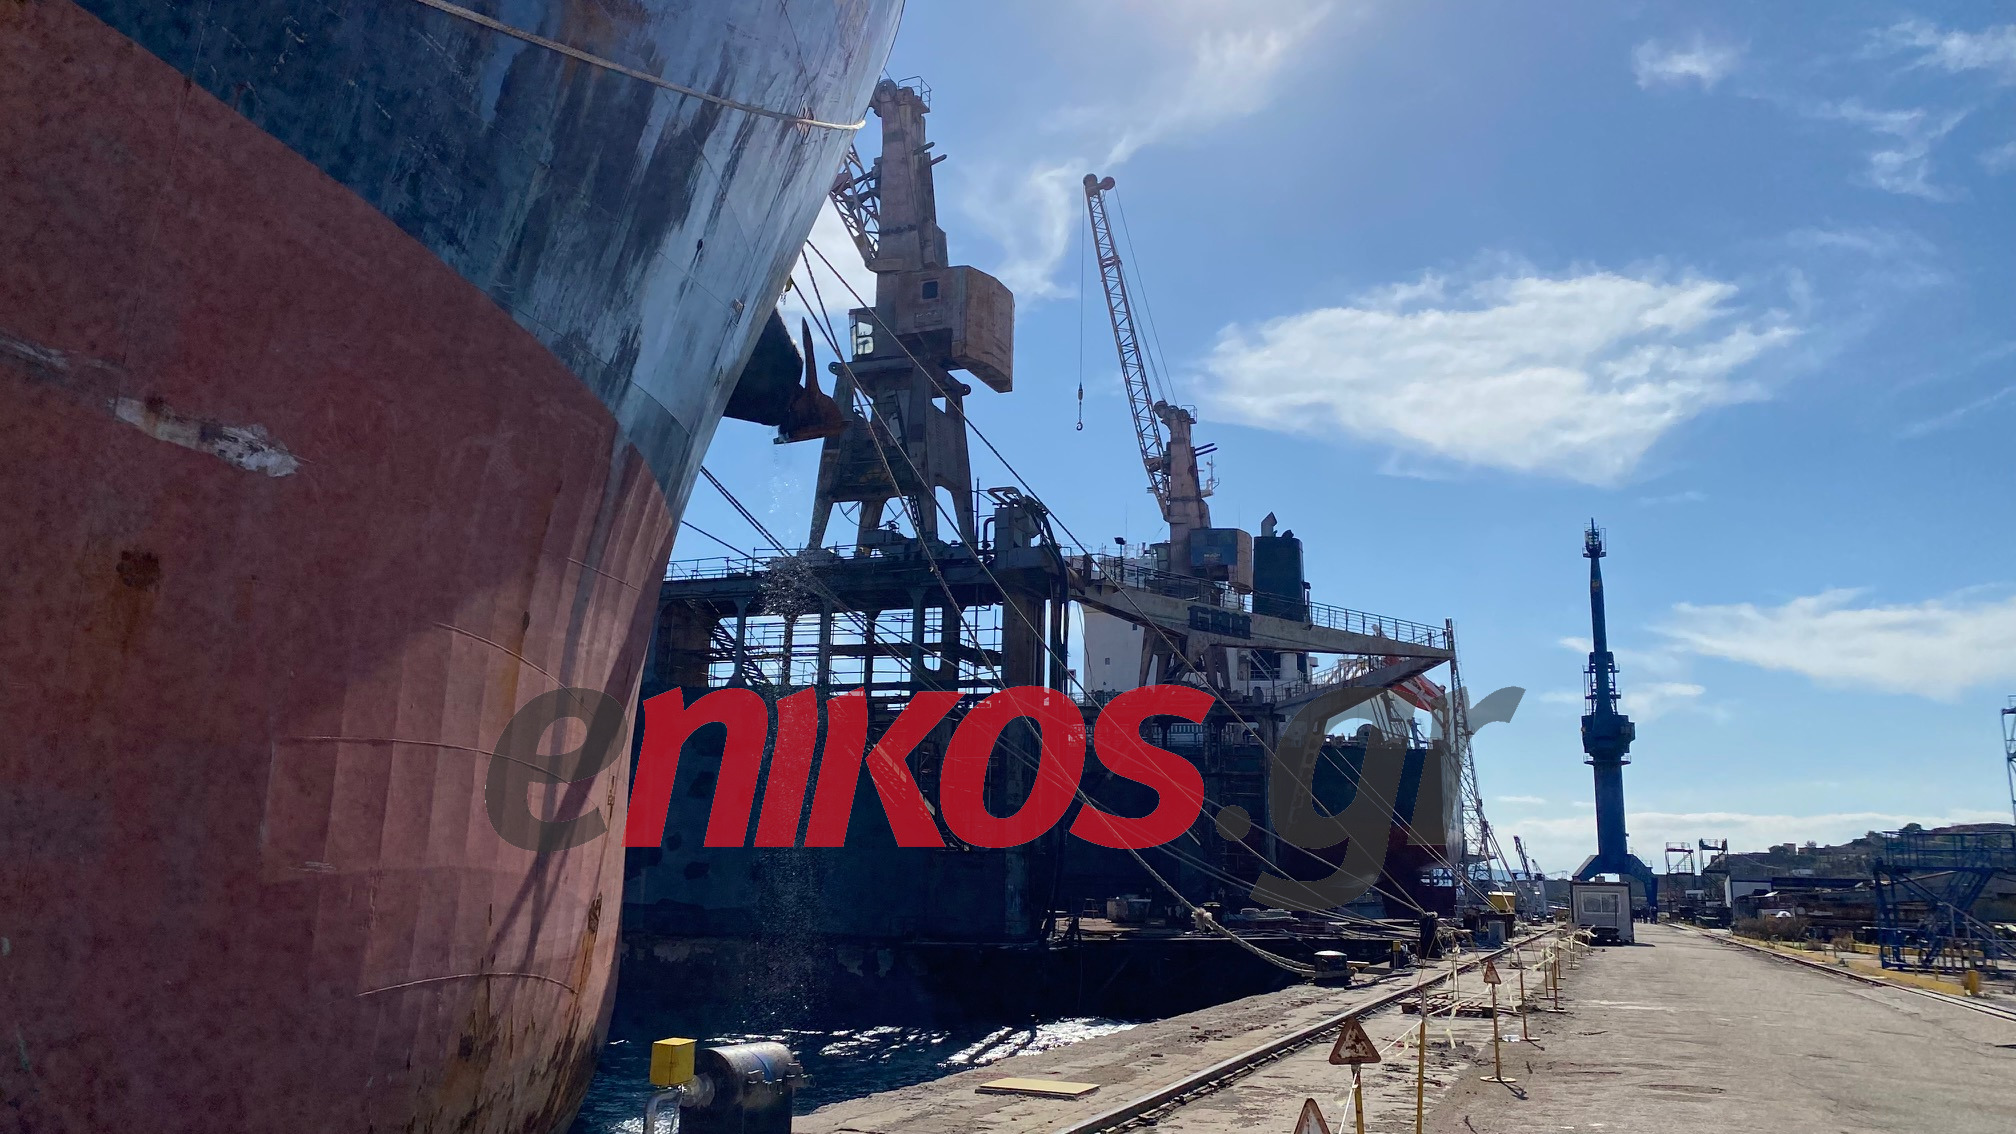 Τα ελληνικά ναυπηγεία απέκτησαν την δική τους Ένωση κι ετοιμάζονται να «χτυπήσουν» την Τουρκία